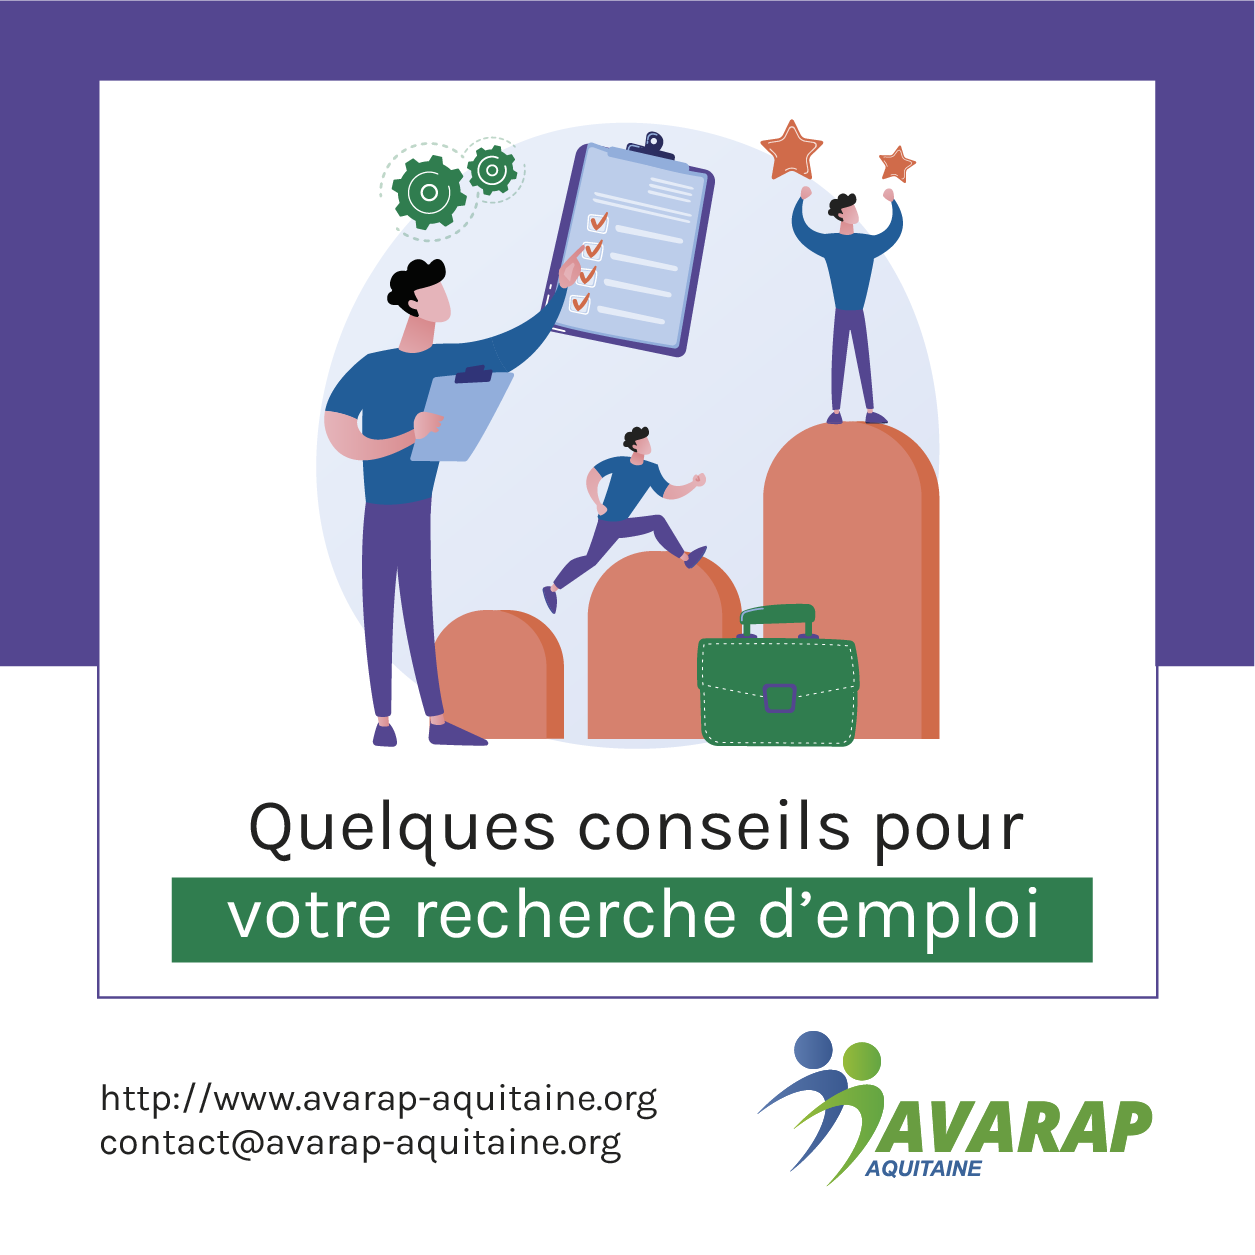 Conseil de l'Avarap Aquitaine pour retrouver un emploi.